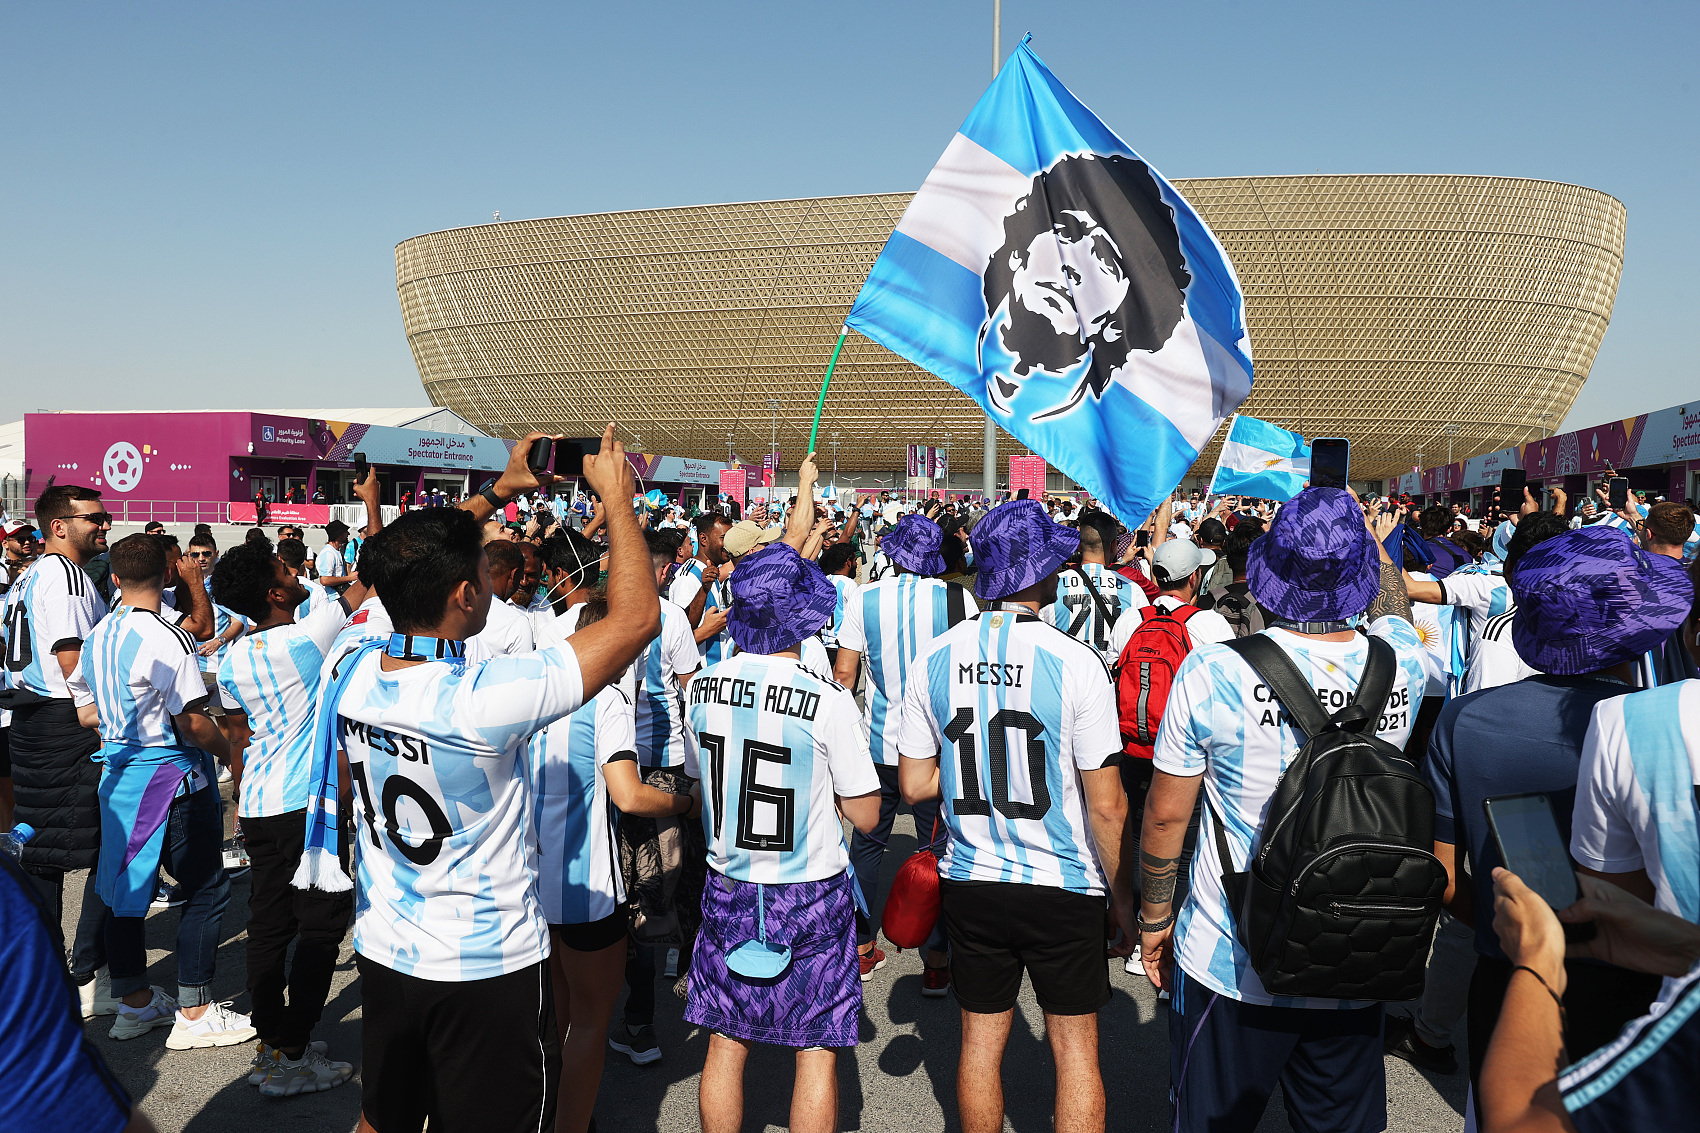 马拉多纳为阿根廷祈祷,阿根廷,别为我哭泣马拉多纳,阿根廷解说马拉多纳,马拉多纳对阿根廷足球 GOAT保佑！阿根廷对阵沙特，阿根廷球迷把“马拉多纳”带到球场